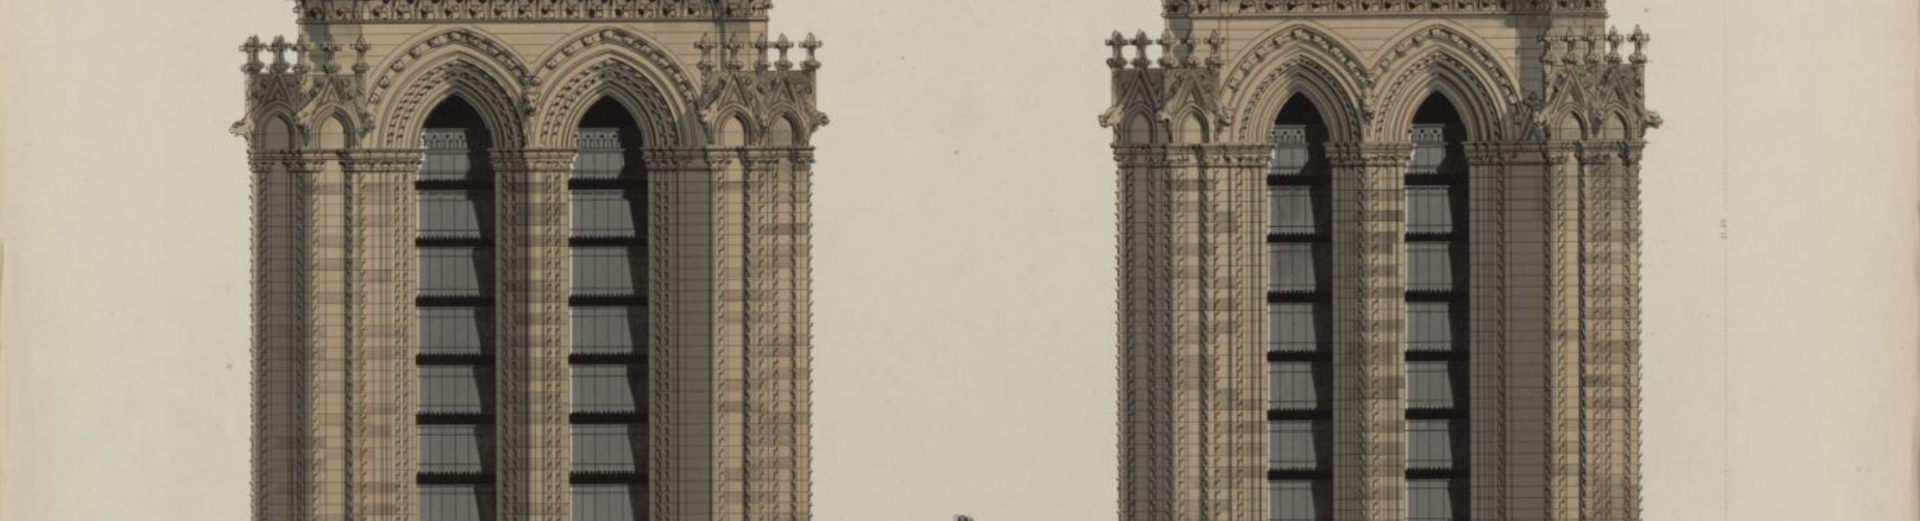 Estampe très précise de deux tours de la cathédrale avec une façade détaillée et réaliste